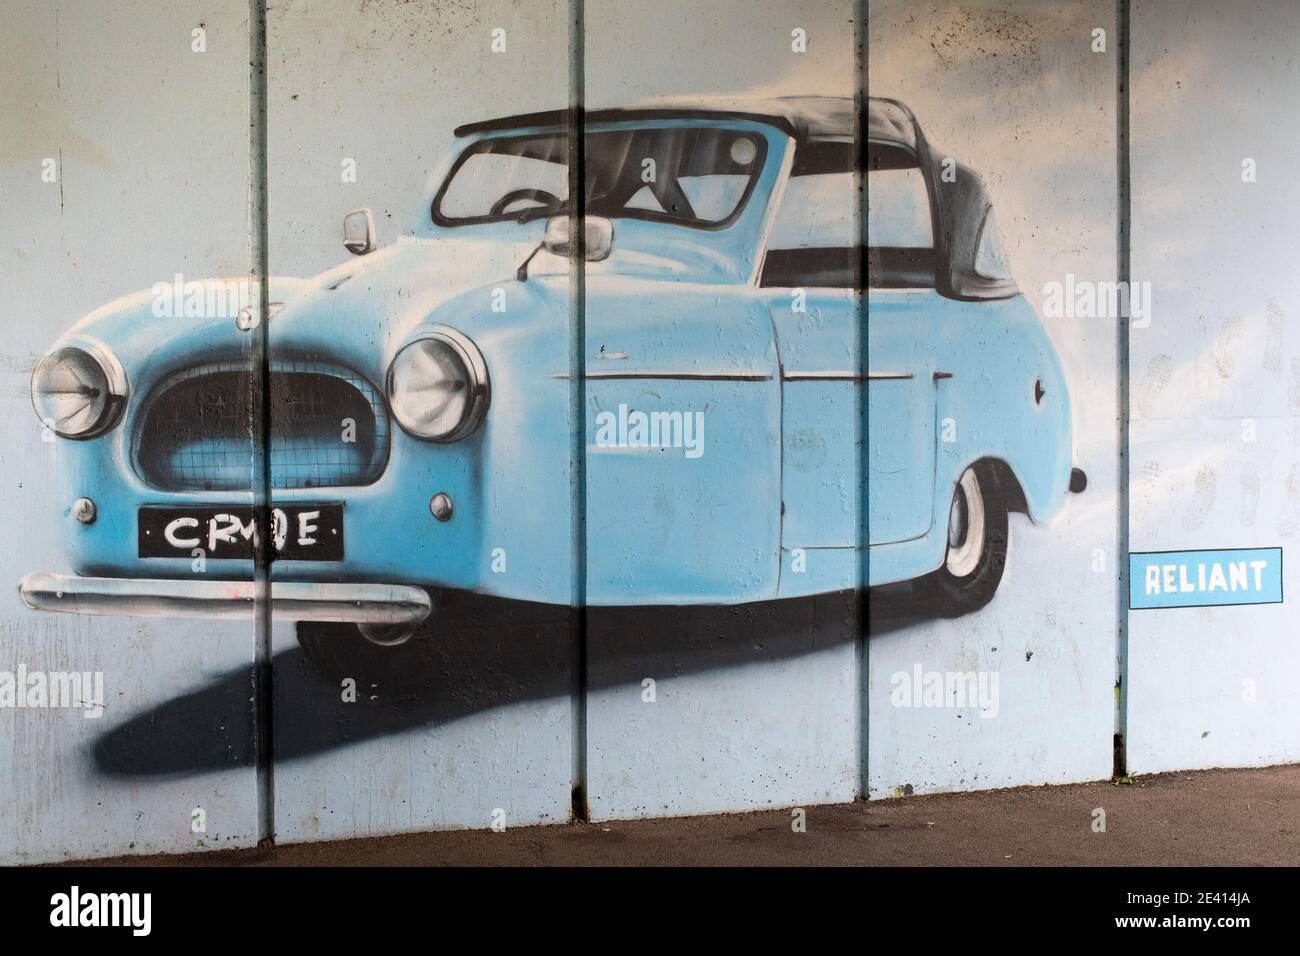 Ein Graffiti-Stil Gemälde eines dreirädrigen Reliant Auto auf einer Unterführung neben dem Fluss zahm in Tamworth. Reliant waren ein Automobilhersteller mit Sitz in Tamworth. Das Unternehmen hörte 2002 auf zu existieren und der Standort der Reliant Fabrik ist jetzt eine Wohnsiedlung. Die Firma war bekannt für ihre ungewöhnlichen dreirädrigen Fahrzeuge. Stockfoto